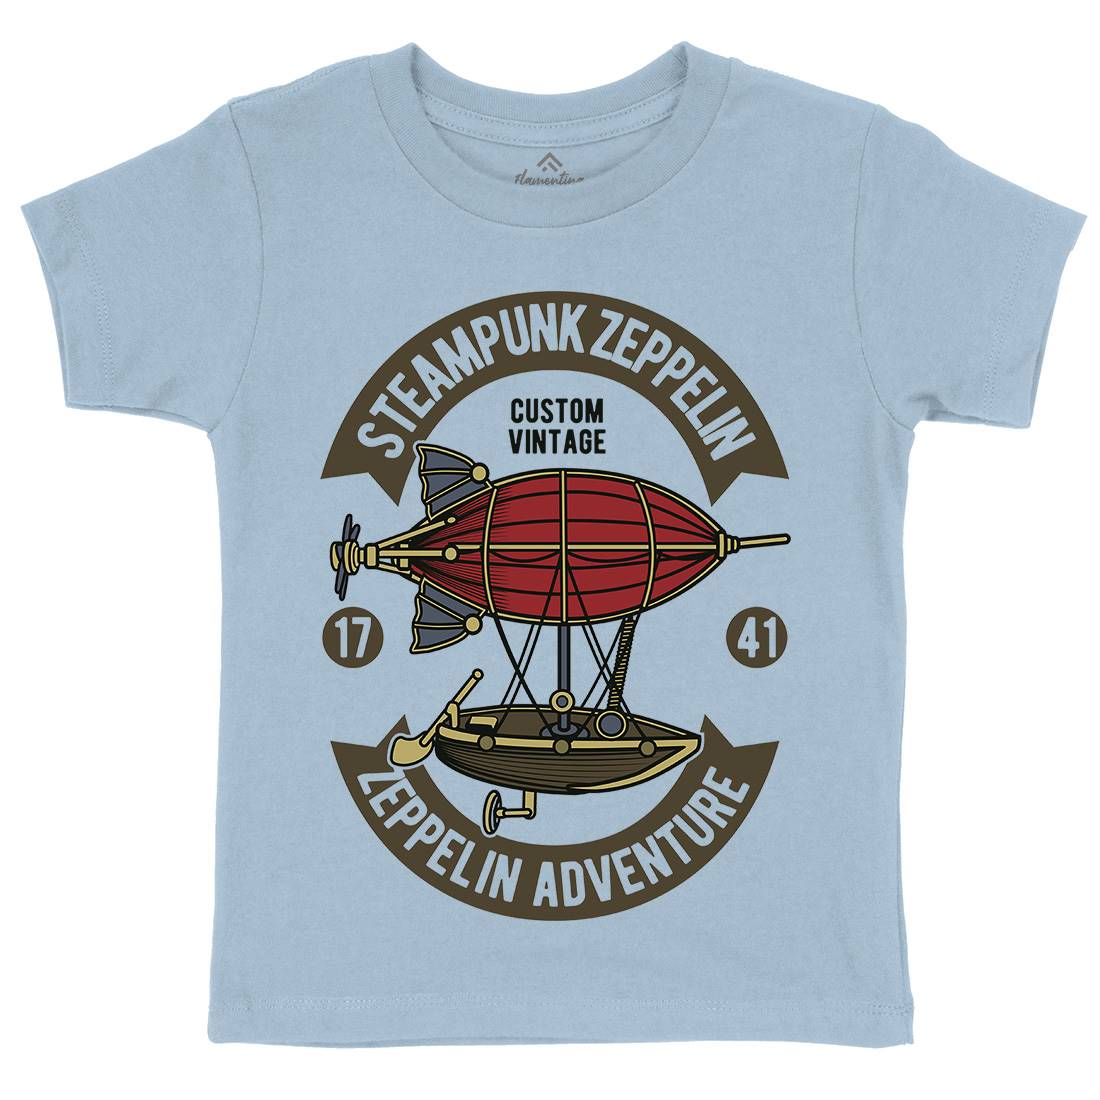 Steampunk Zeppelin Kids Crew Neck T-Shirt Vehicles D584